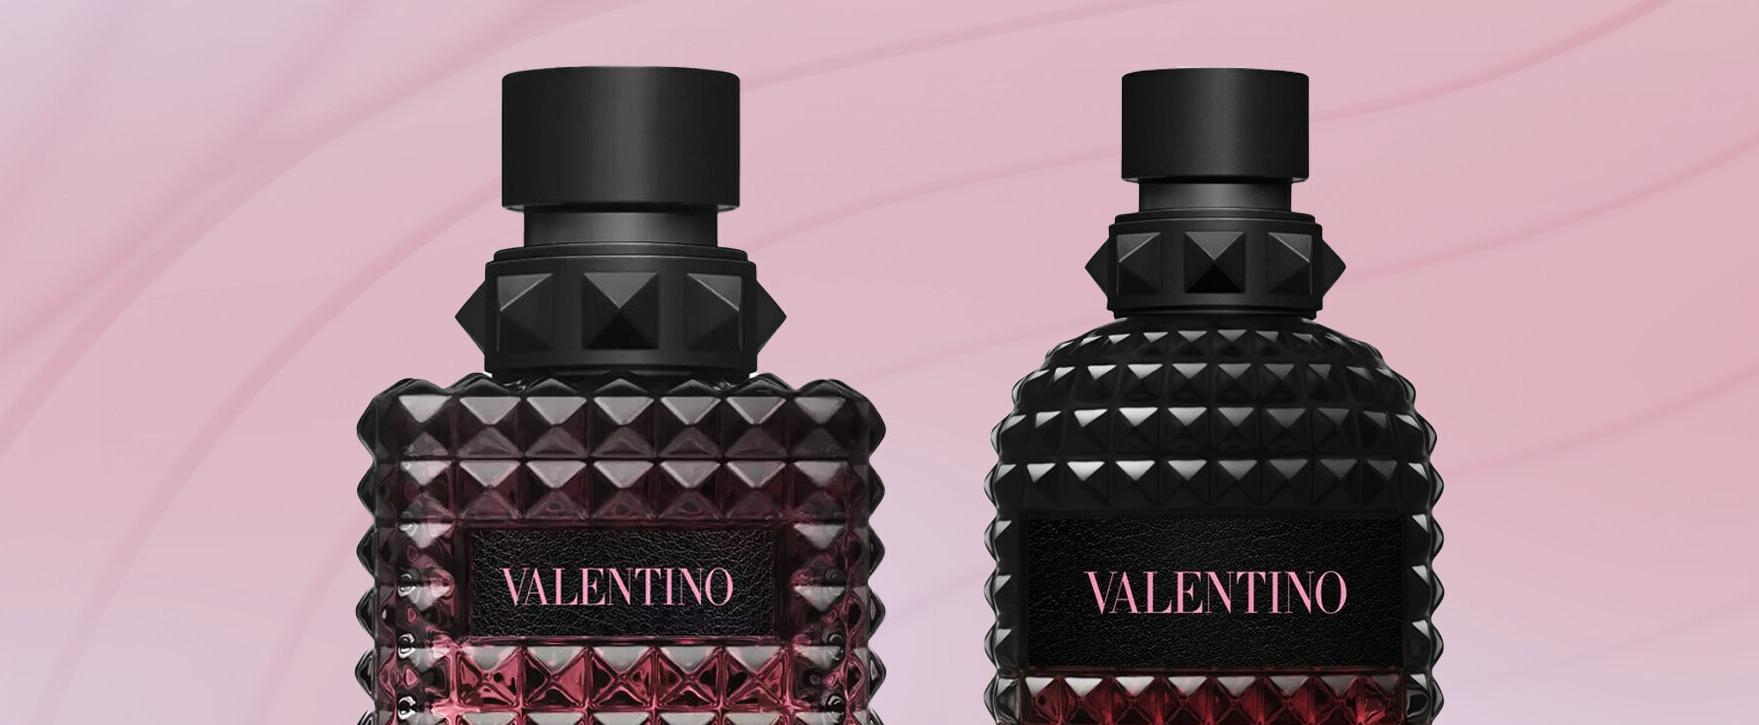 “Born in Roma Intense” - New Perfume Duo of the Italian Fashion Label Valentino